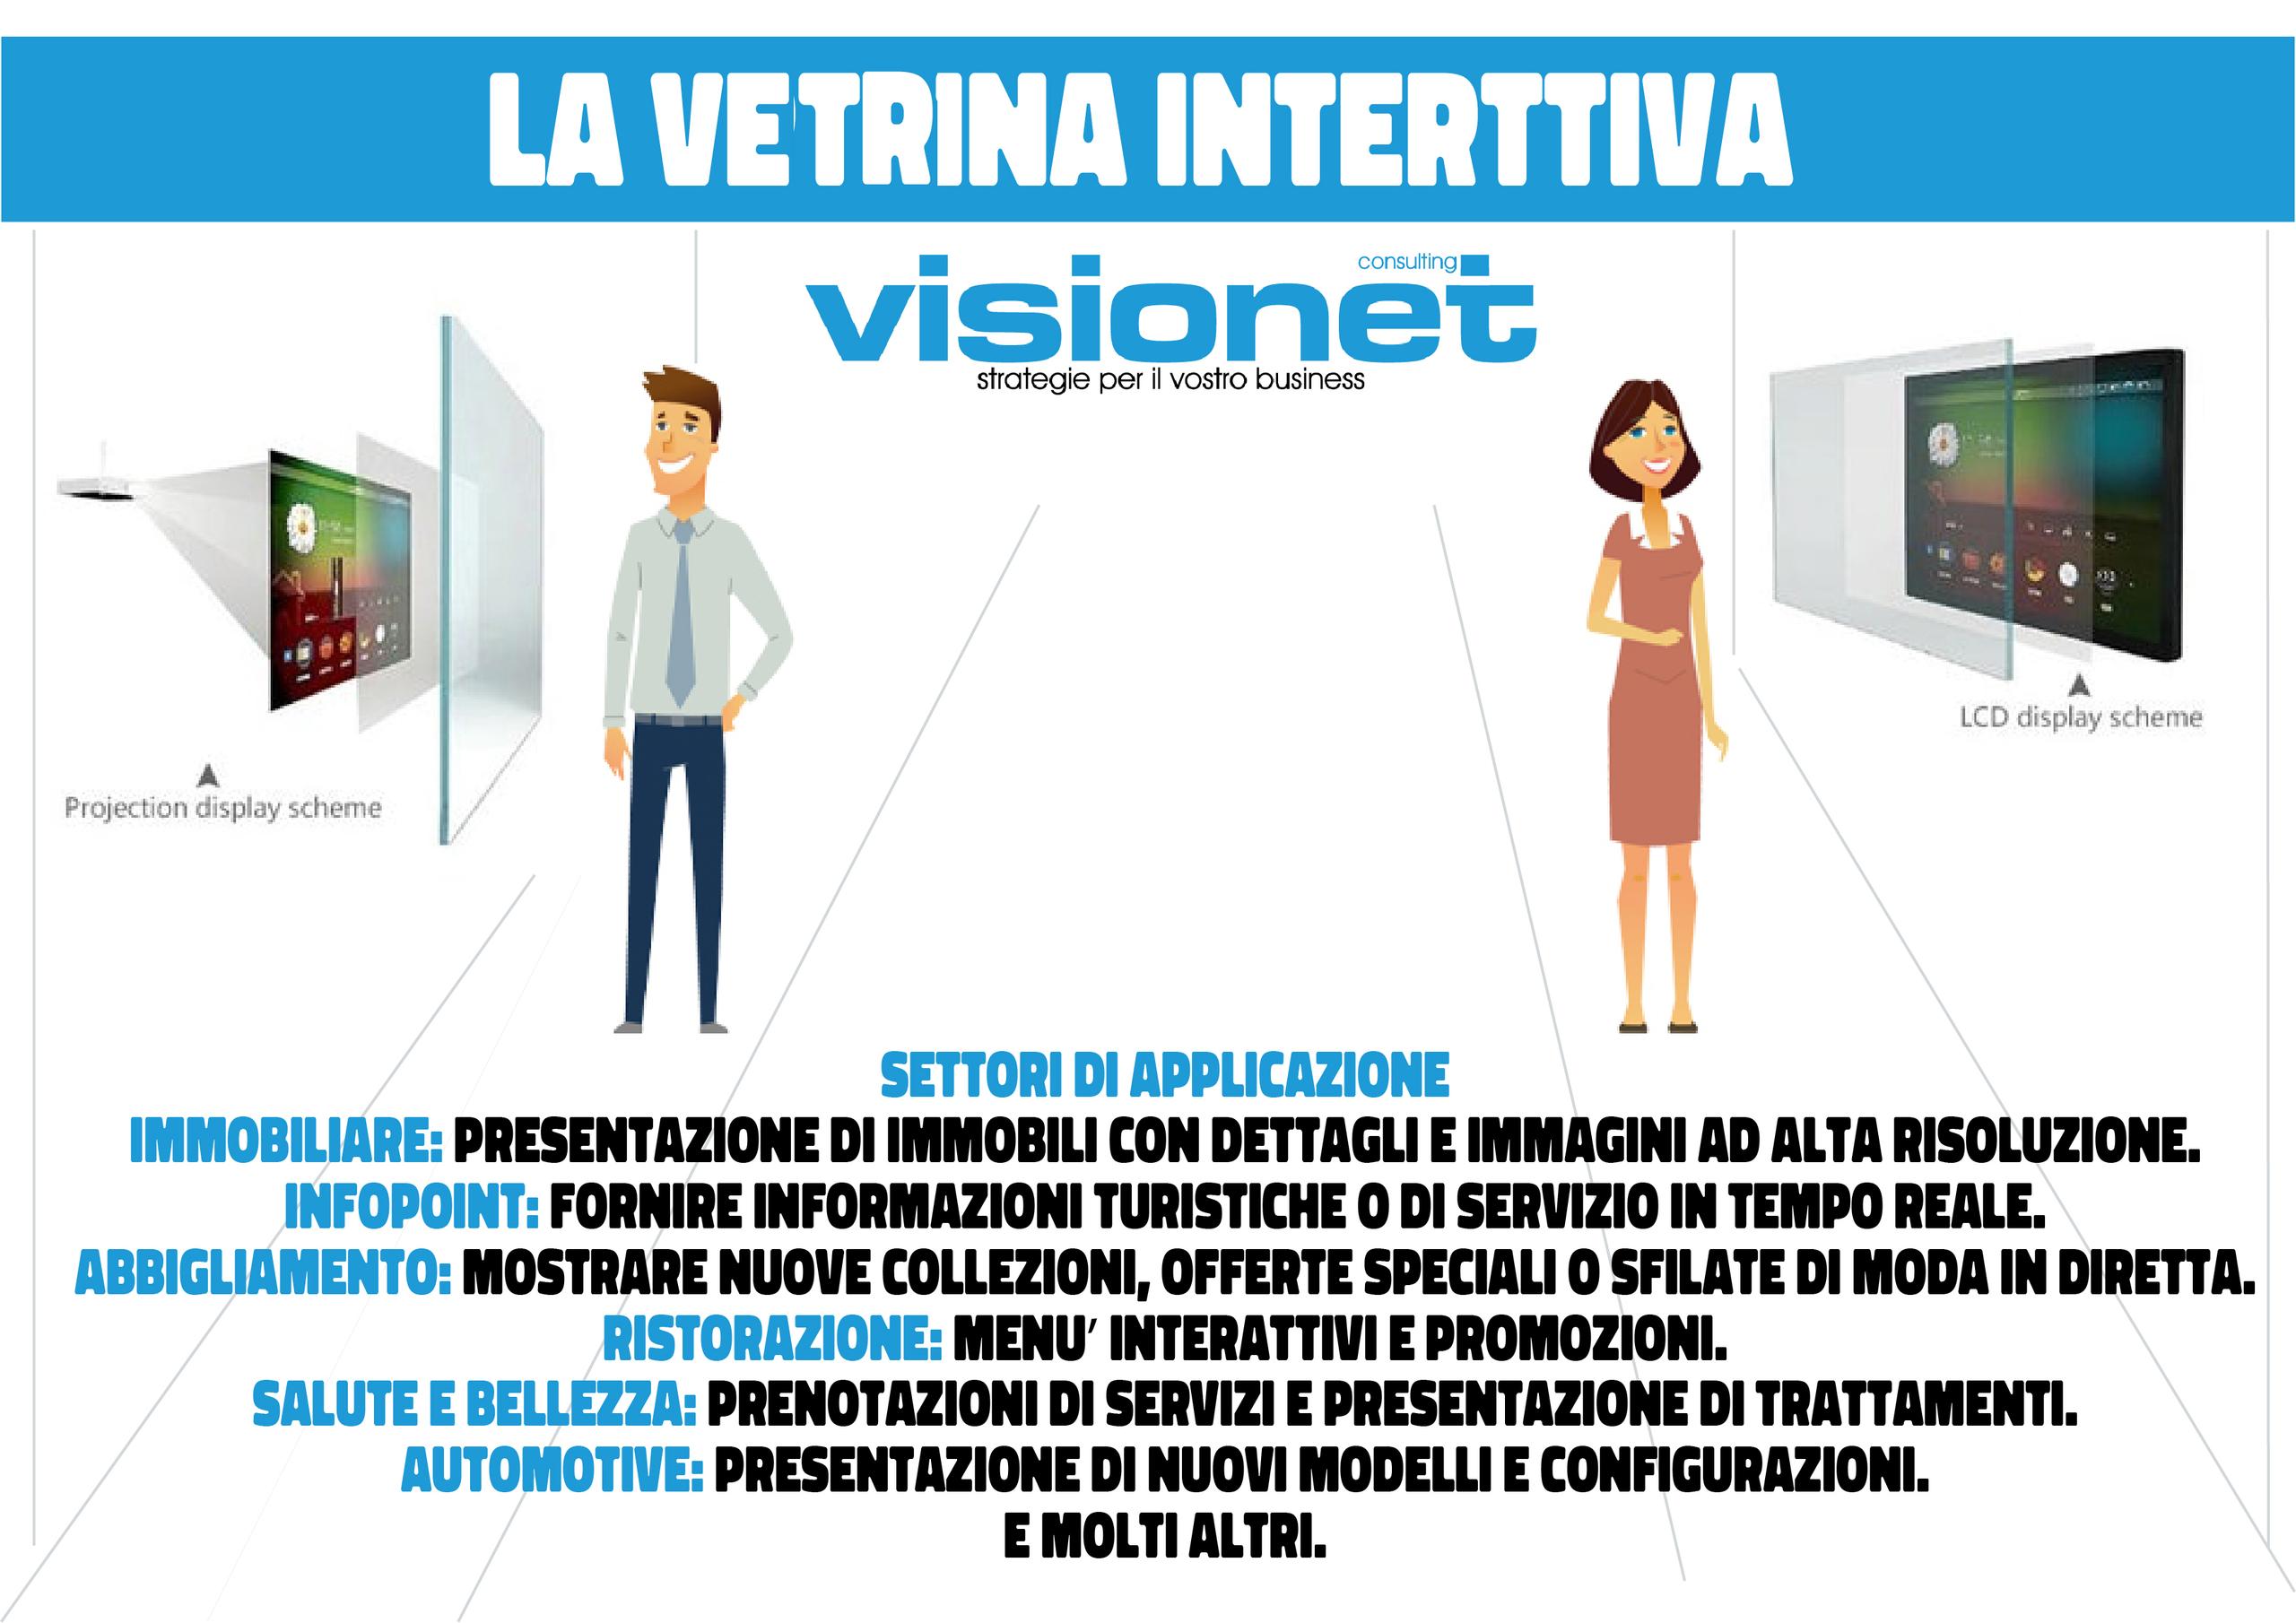 Vetrina Interattiva da Visionet: